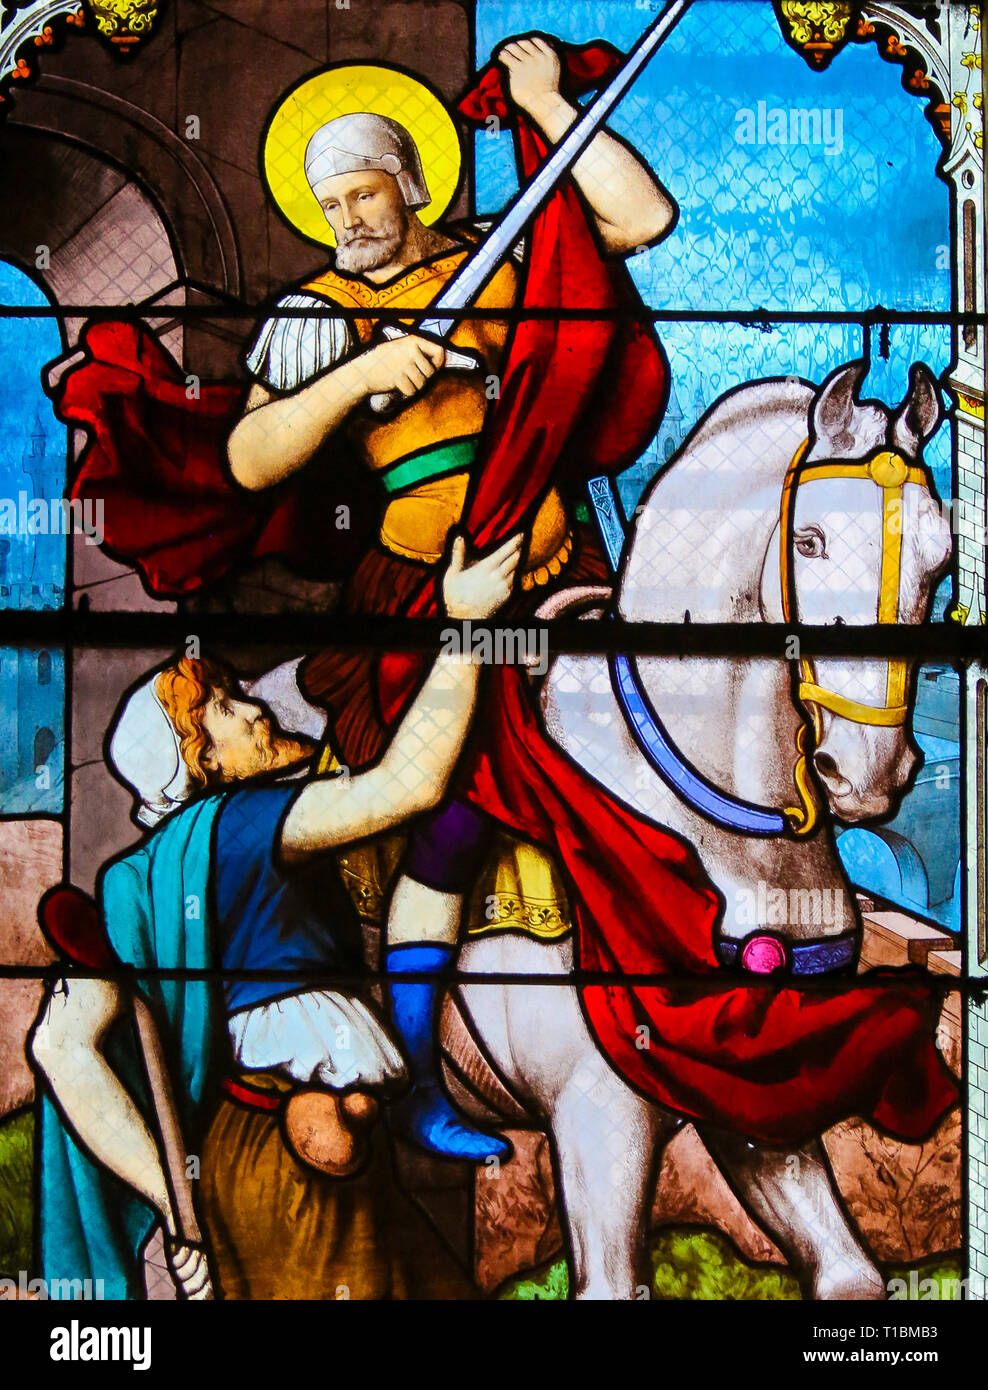 Glasmalereien in der Kirche von St. Severin, Latin, Paris, Frankreich, Darstellung der hl. Martin von Tours, ein Stück Mantel mit einem Bettler Stockfoto